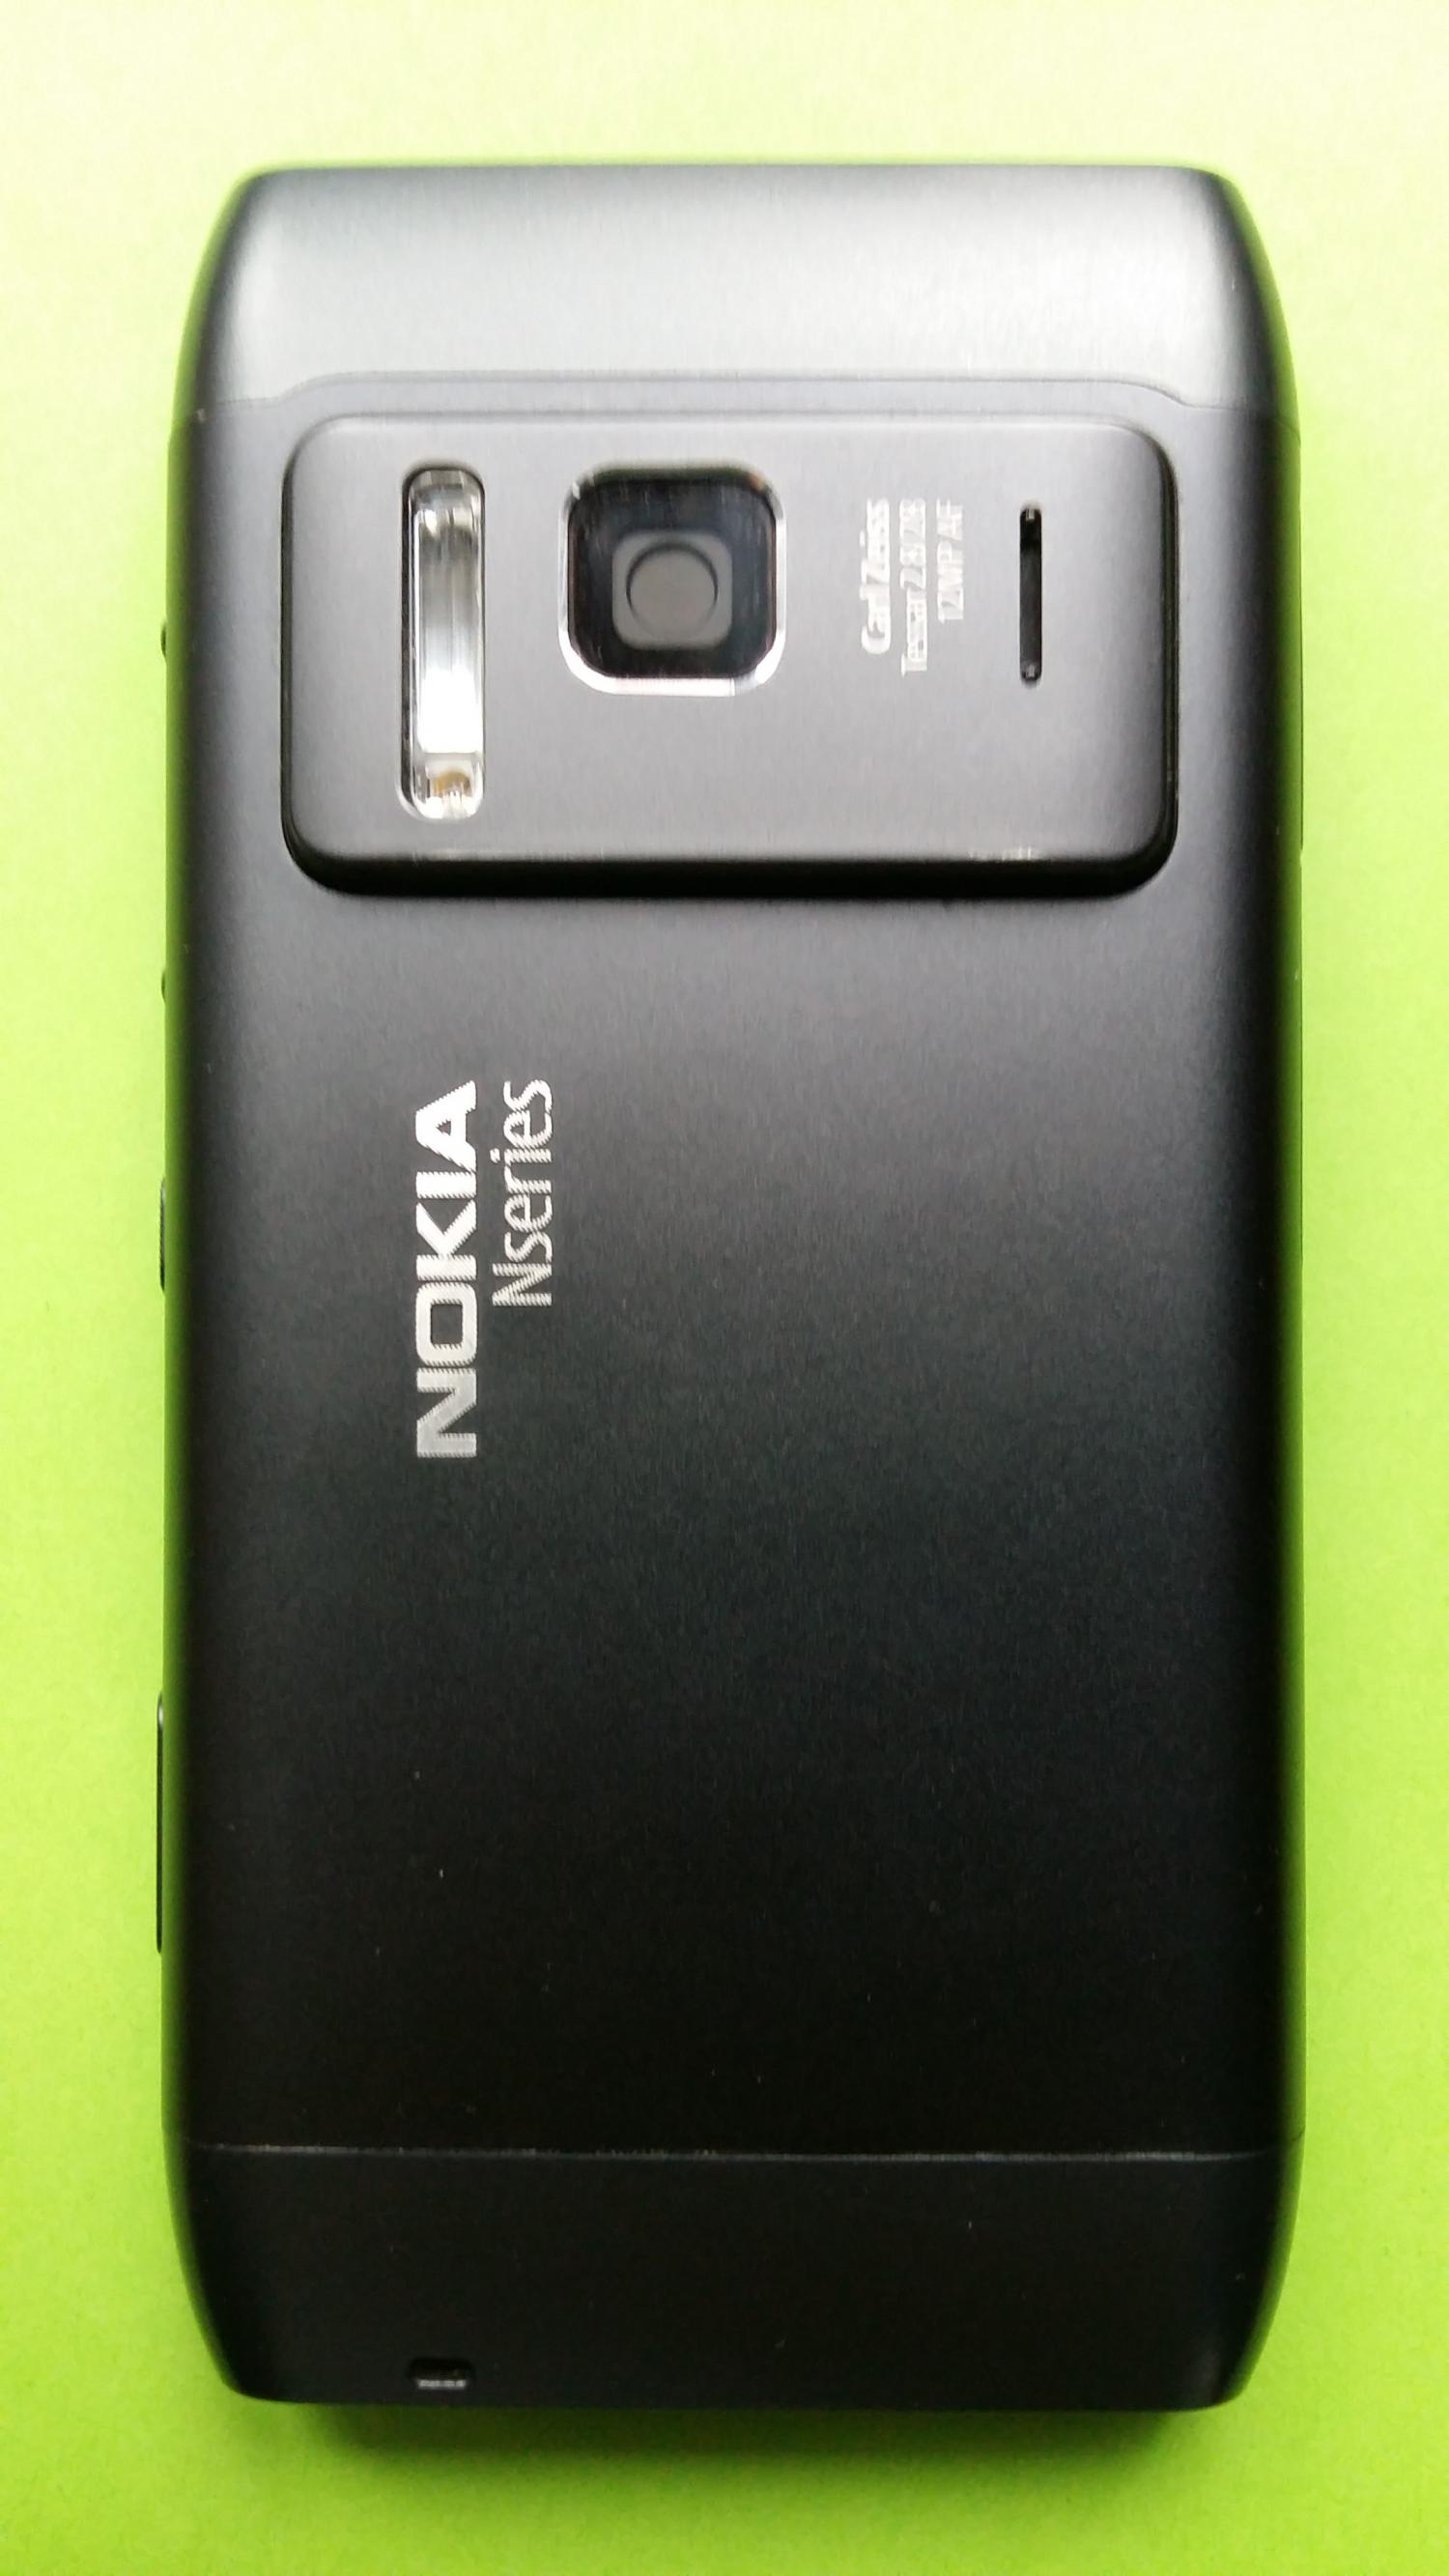 image-7300584-Nokia N8 (1)2.jpg